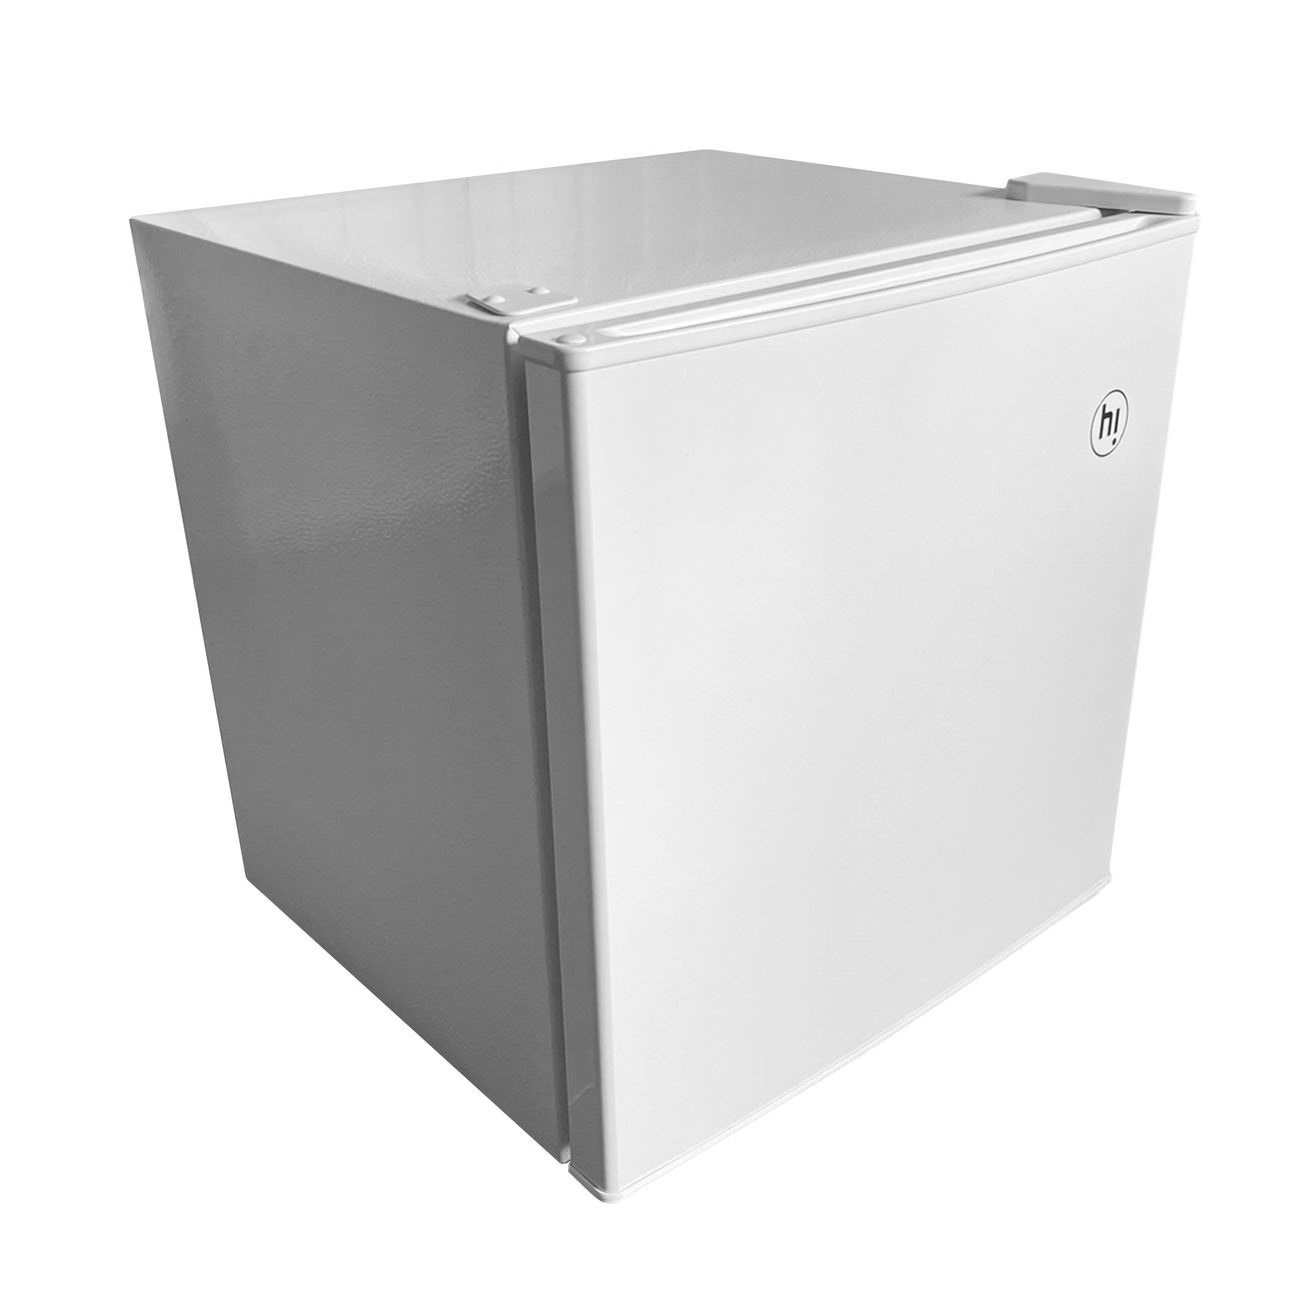 Холодильник Hi HODN050047RW белый - купить в М.видео, цена на Мегамаркет